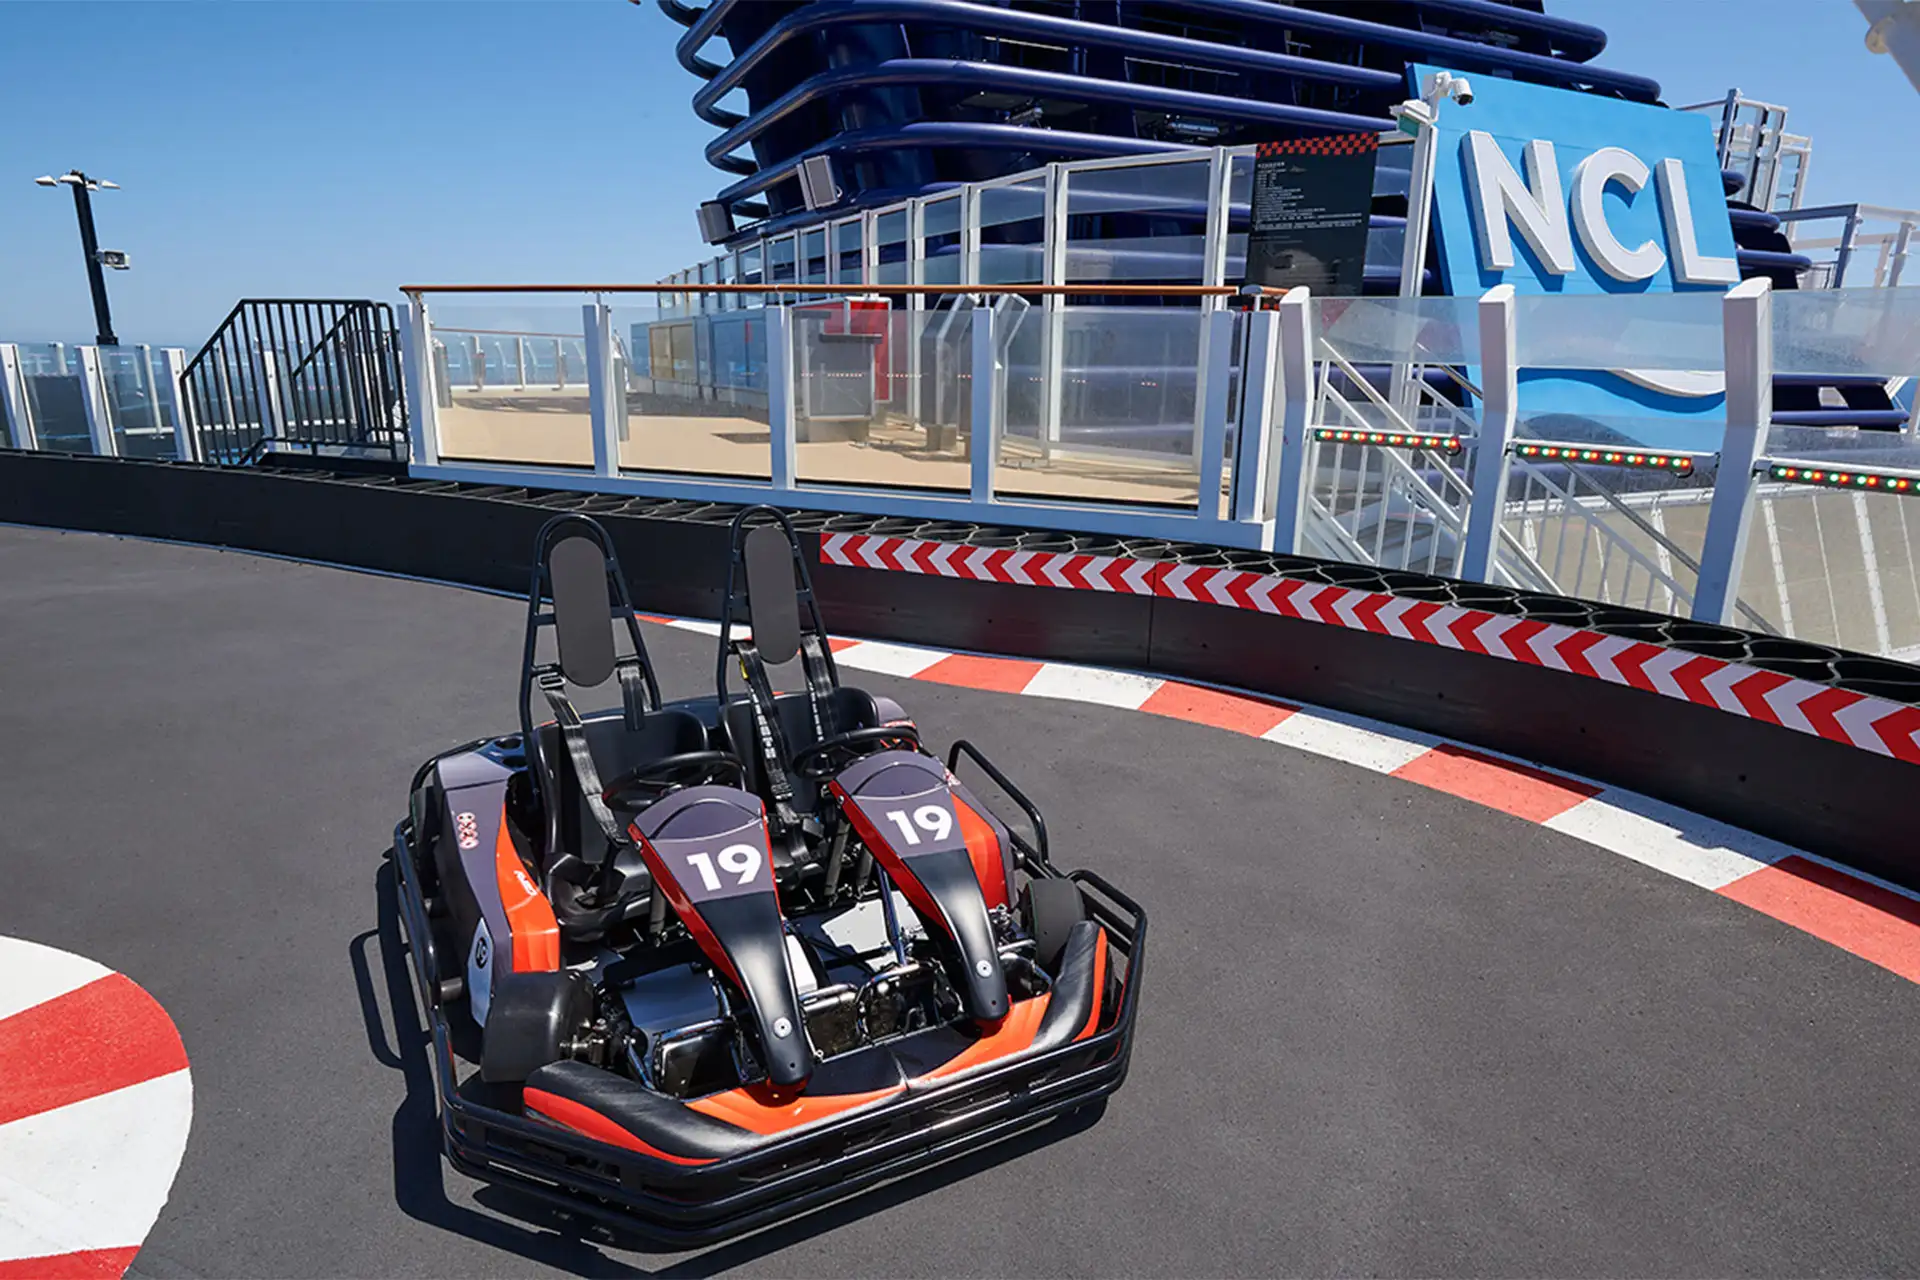 Go Karts on Norwegian Cruise Line Joy; Courtesy of Norwegian Cruise Line